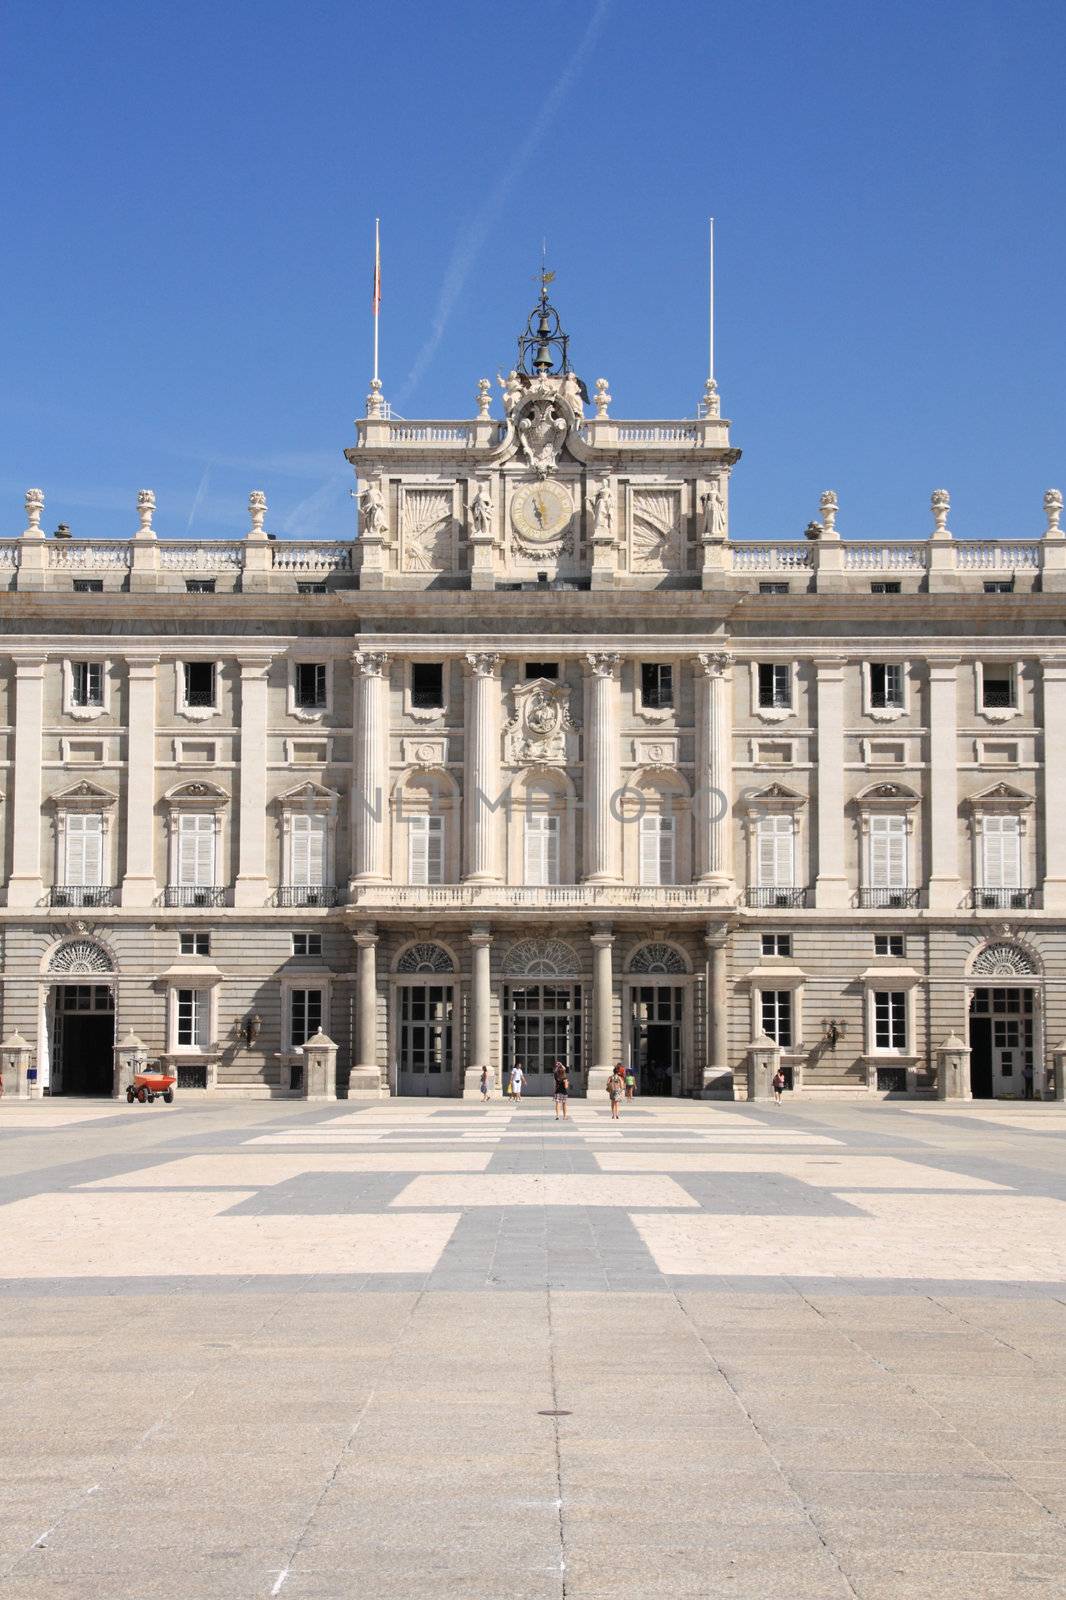 Madrid - Royal Palace by tupungato